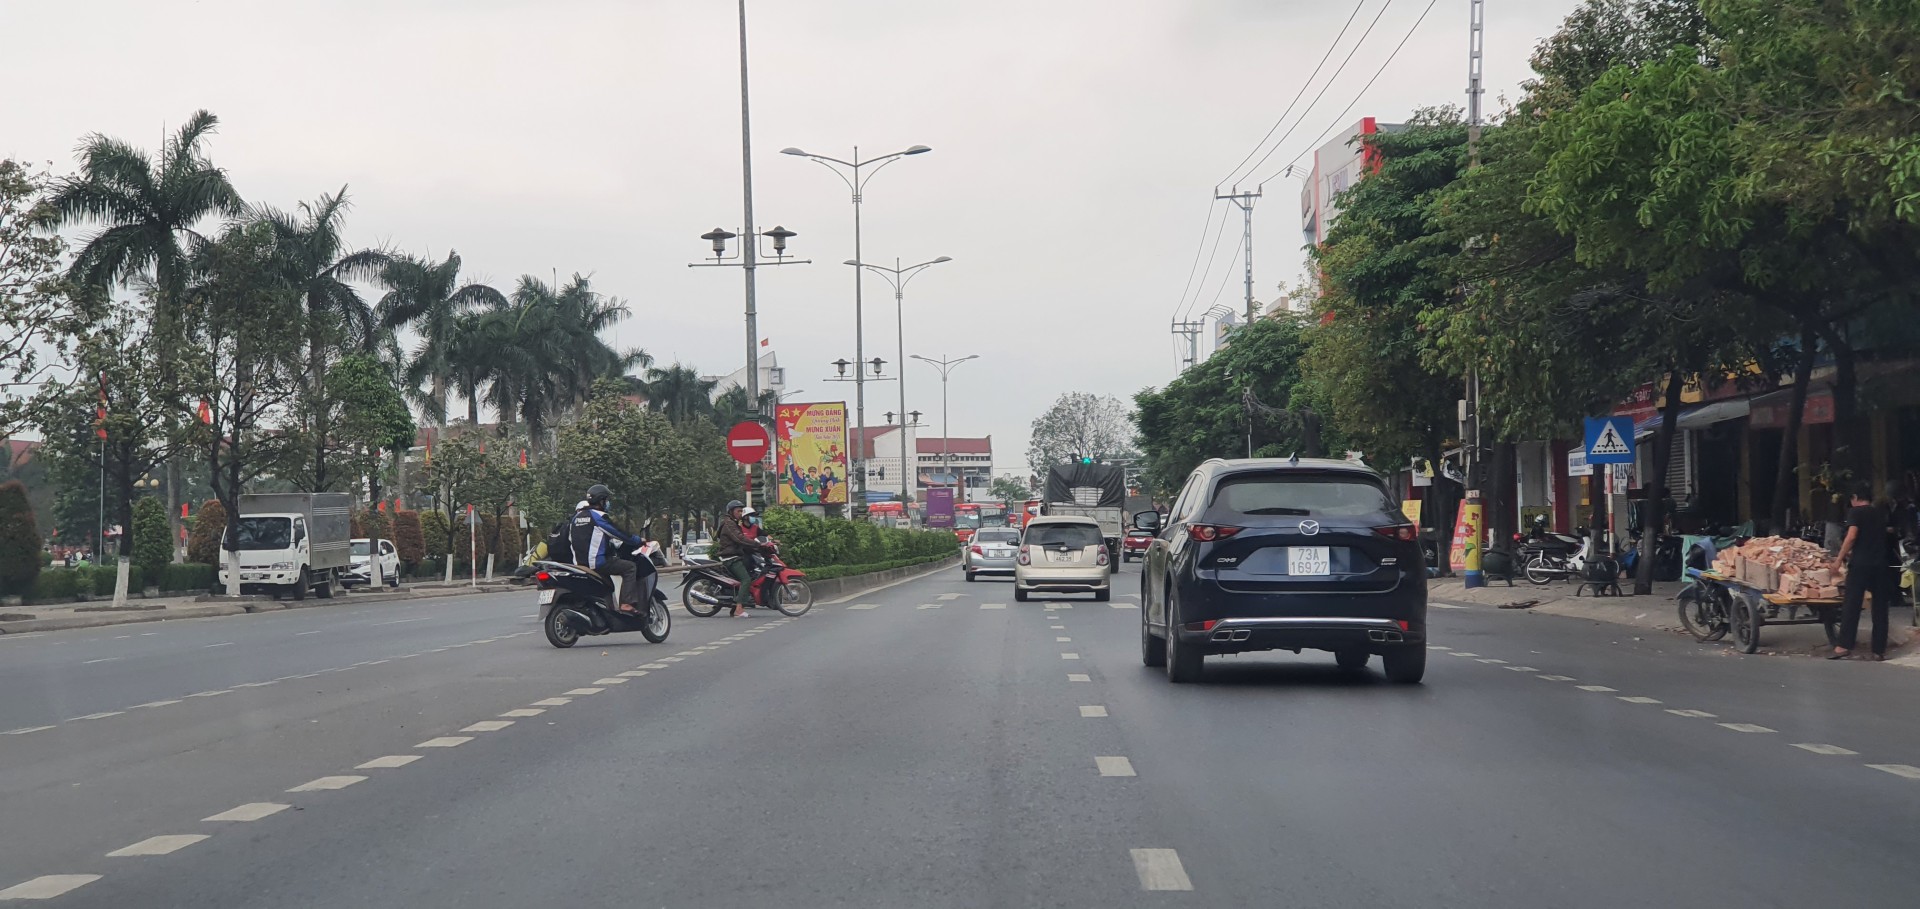 Đầu tư tuyến tránh phía Tây Quốc lộ 1 sẽ góp phần giảm tải áp lực giao thông hiện đang rất lớn tại các đô thị nằm trên trục Quốc lộ 1A của tỉnh Quảng Trị.